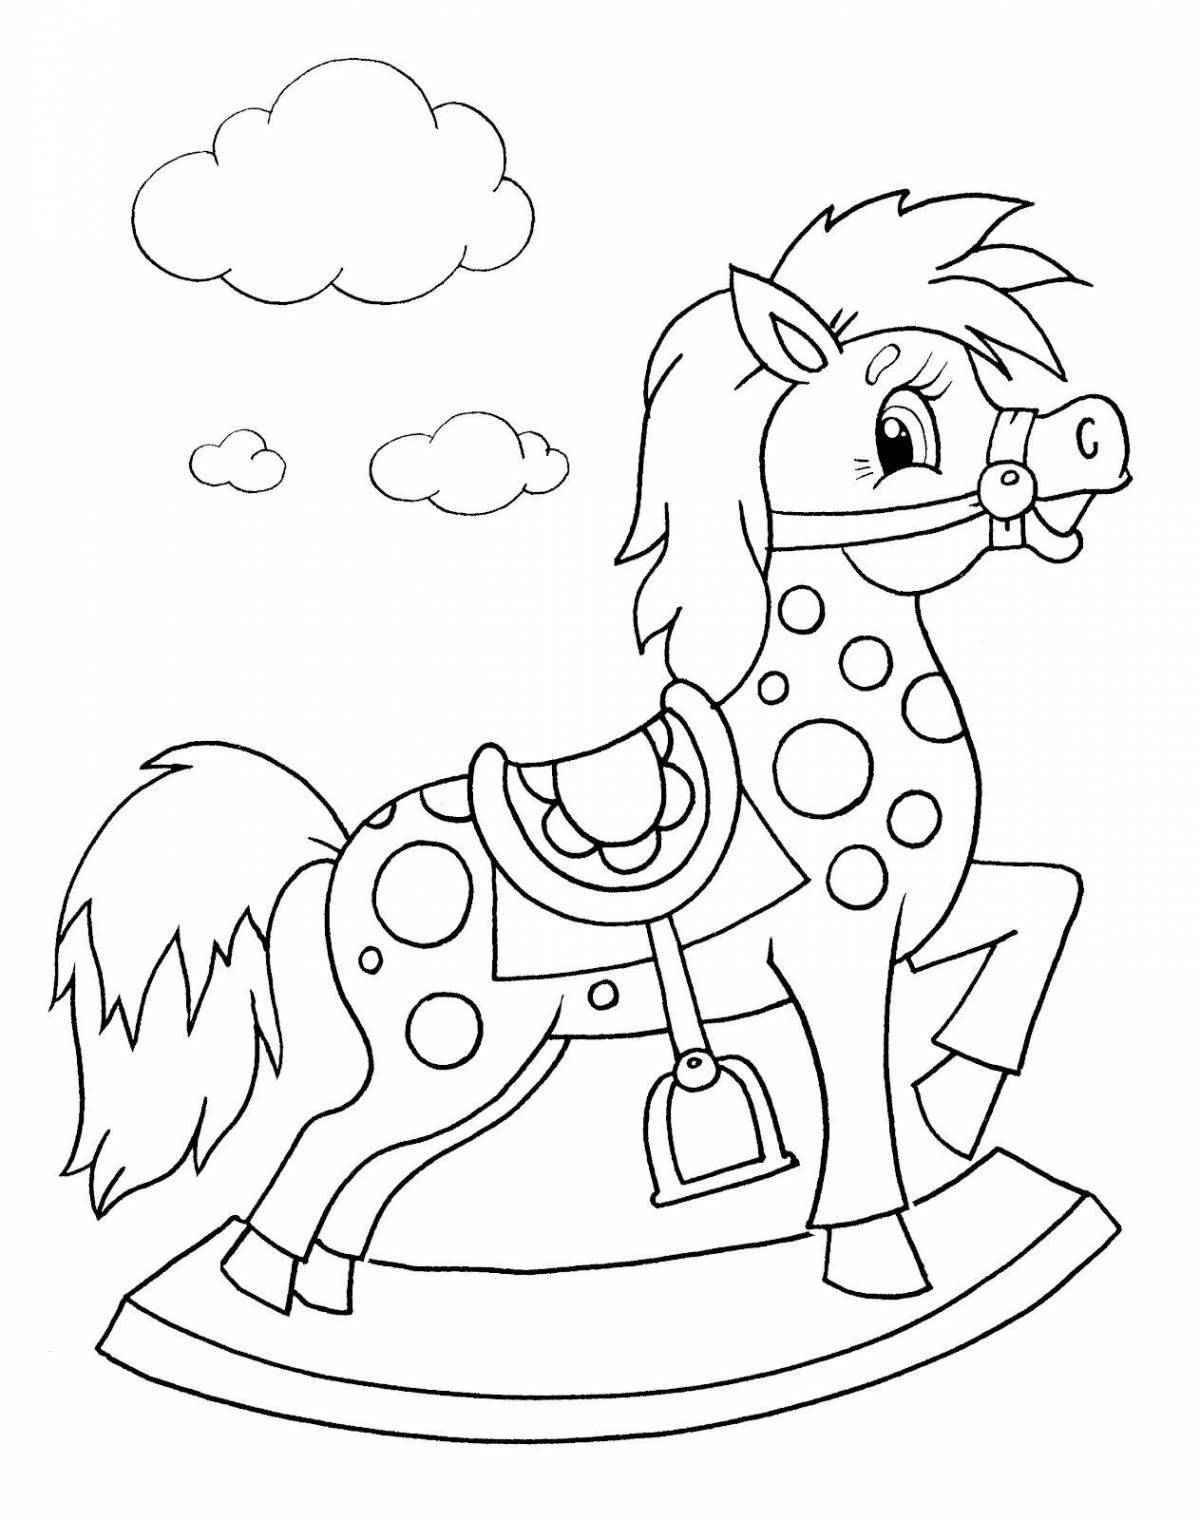 Увлекательный рисунок лошади для детей